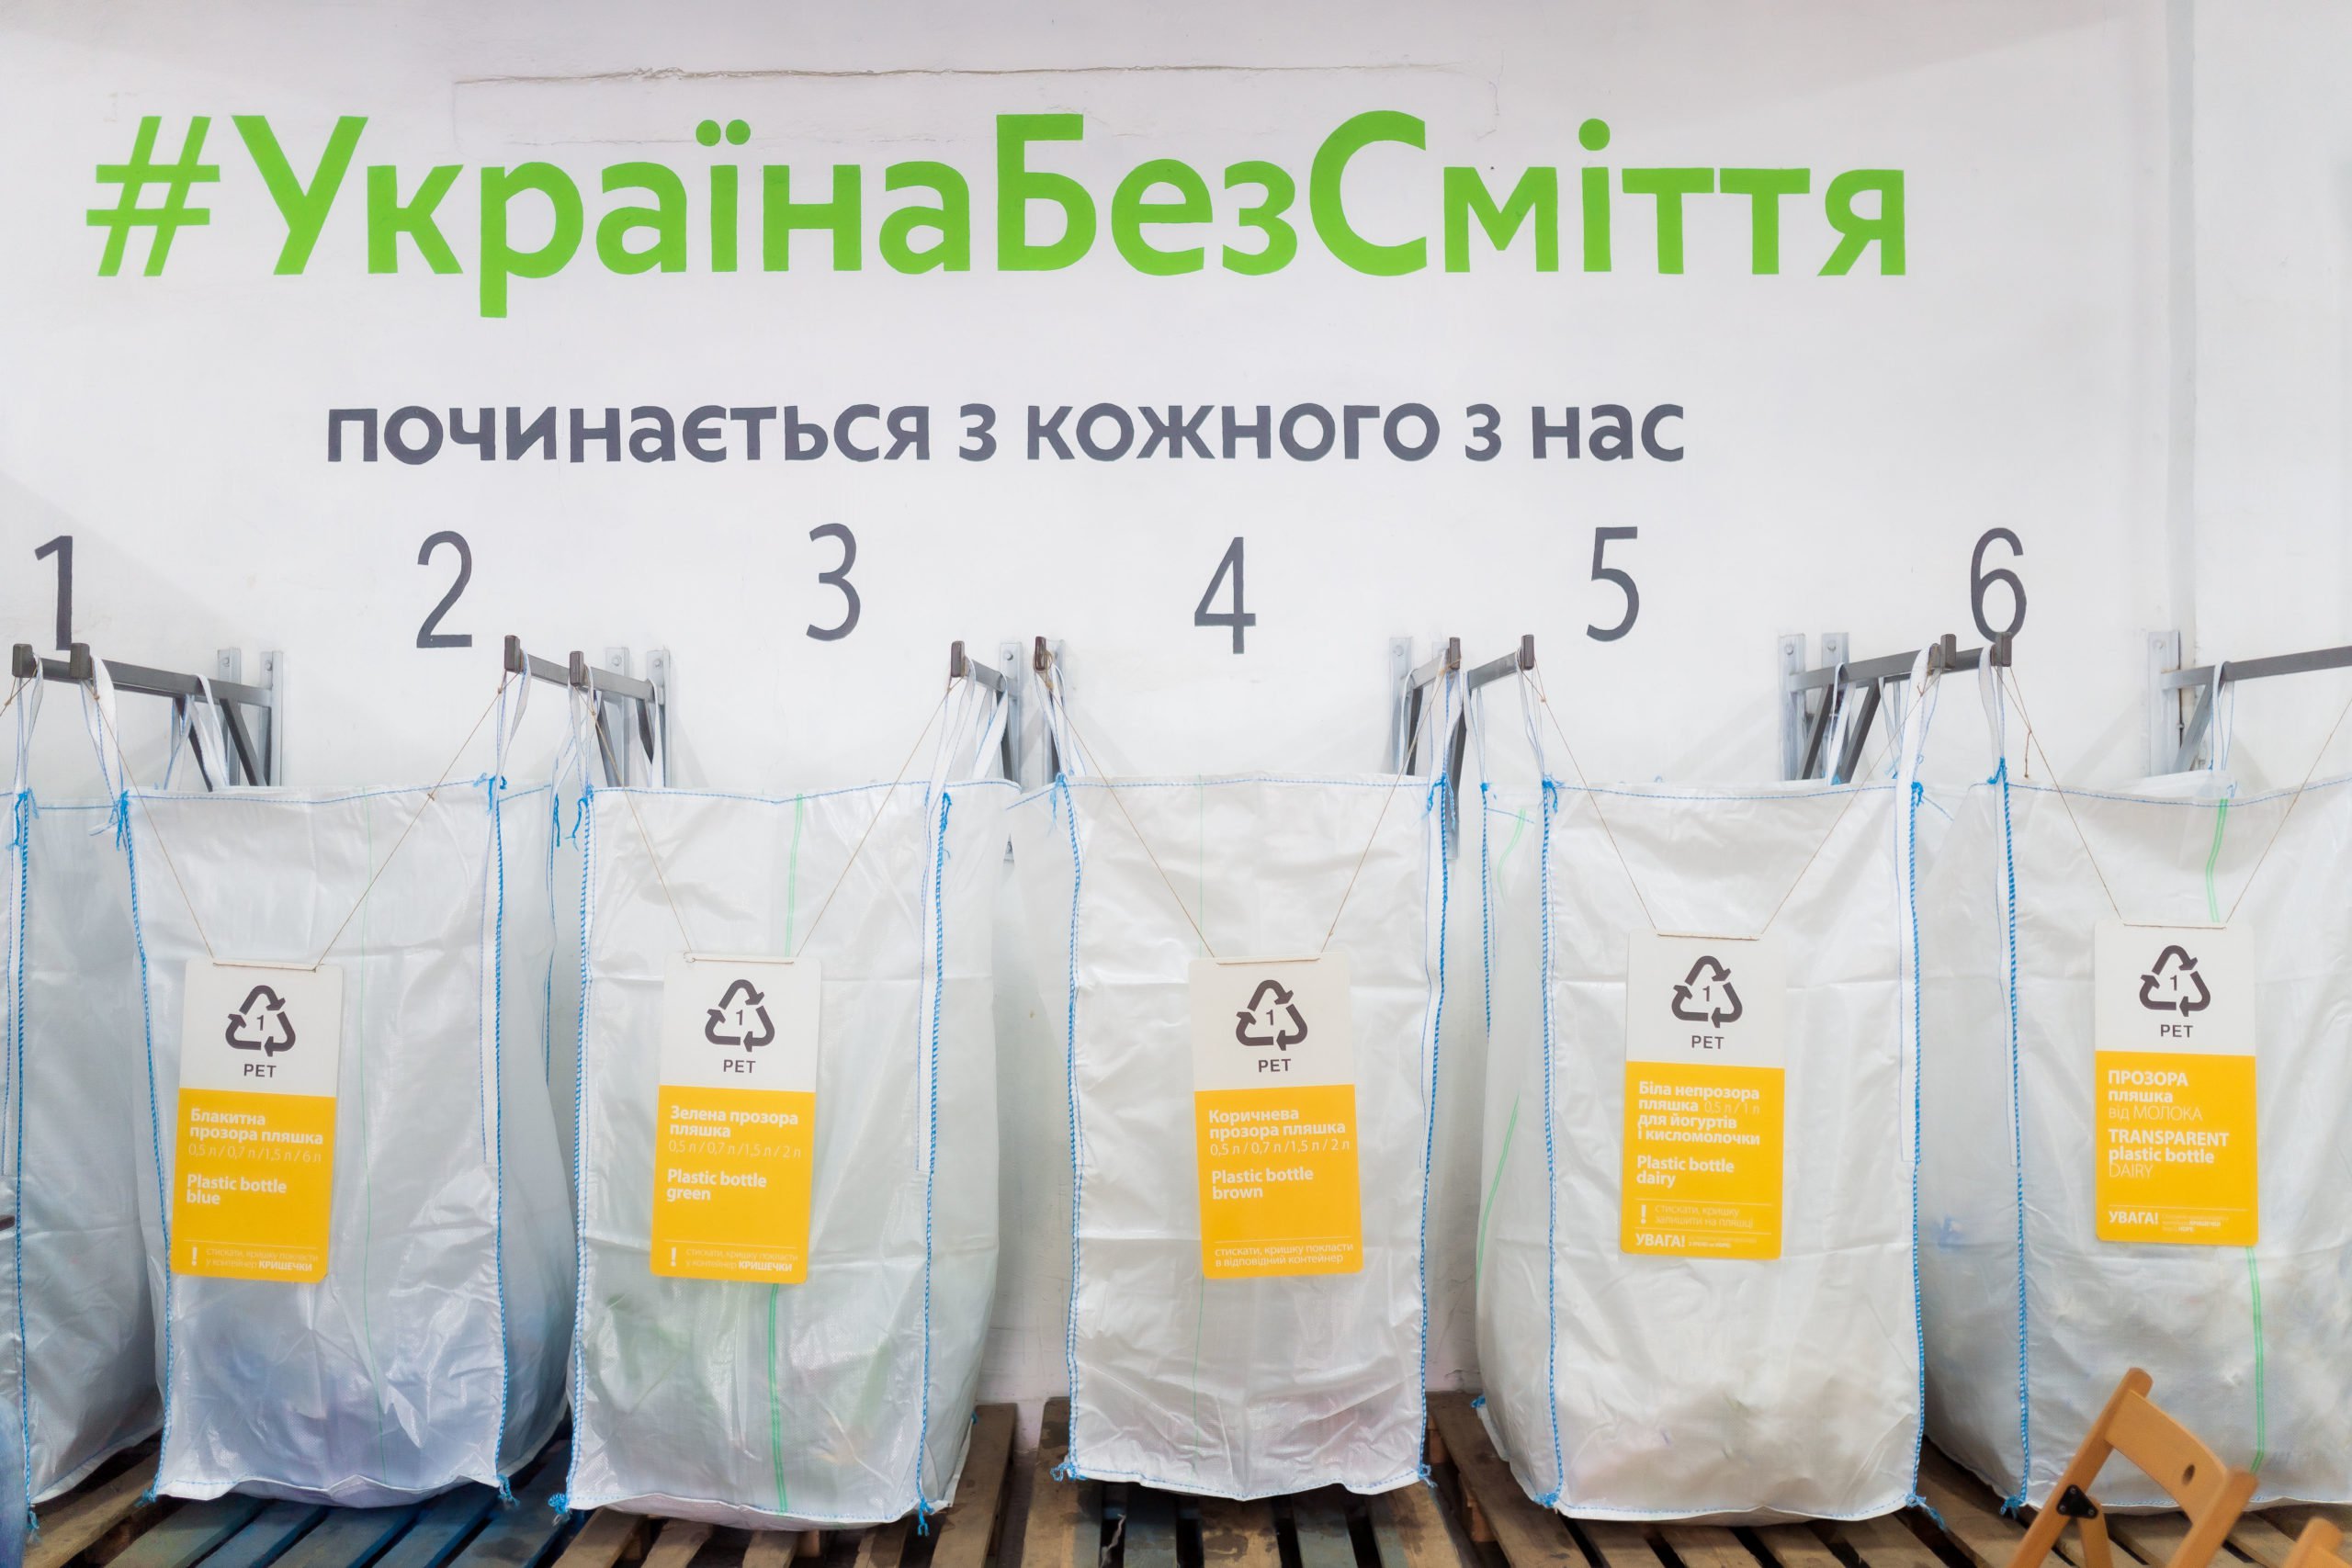 Общественная организация намерена на средства от пожертвований открыть станцию сортировки мусора Киеве